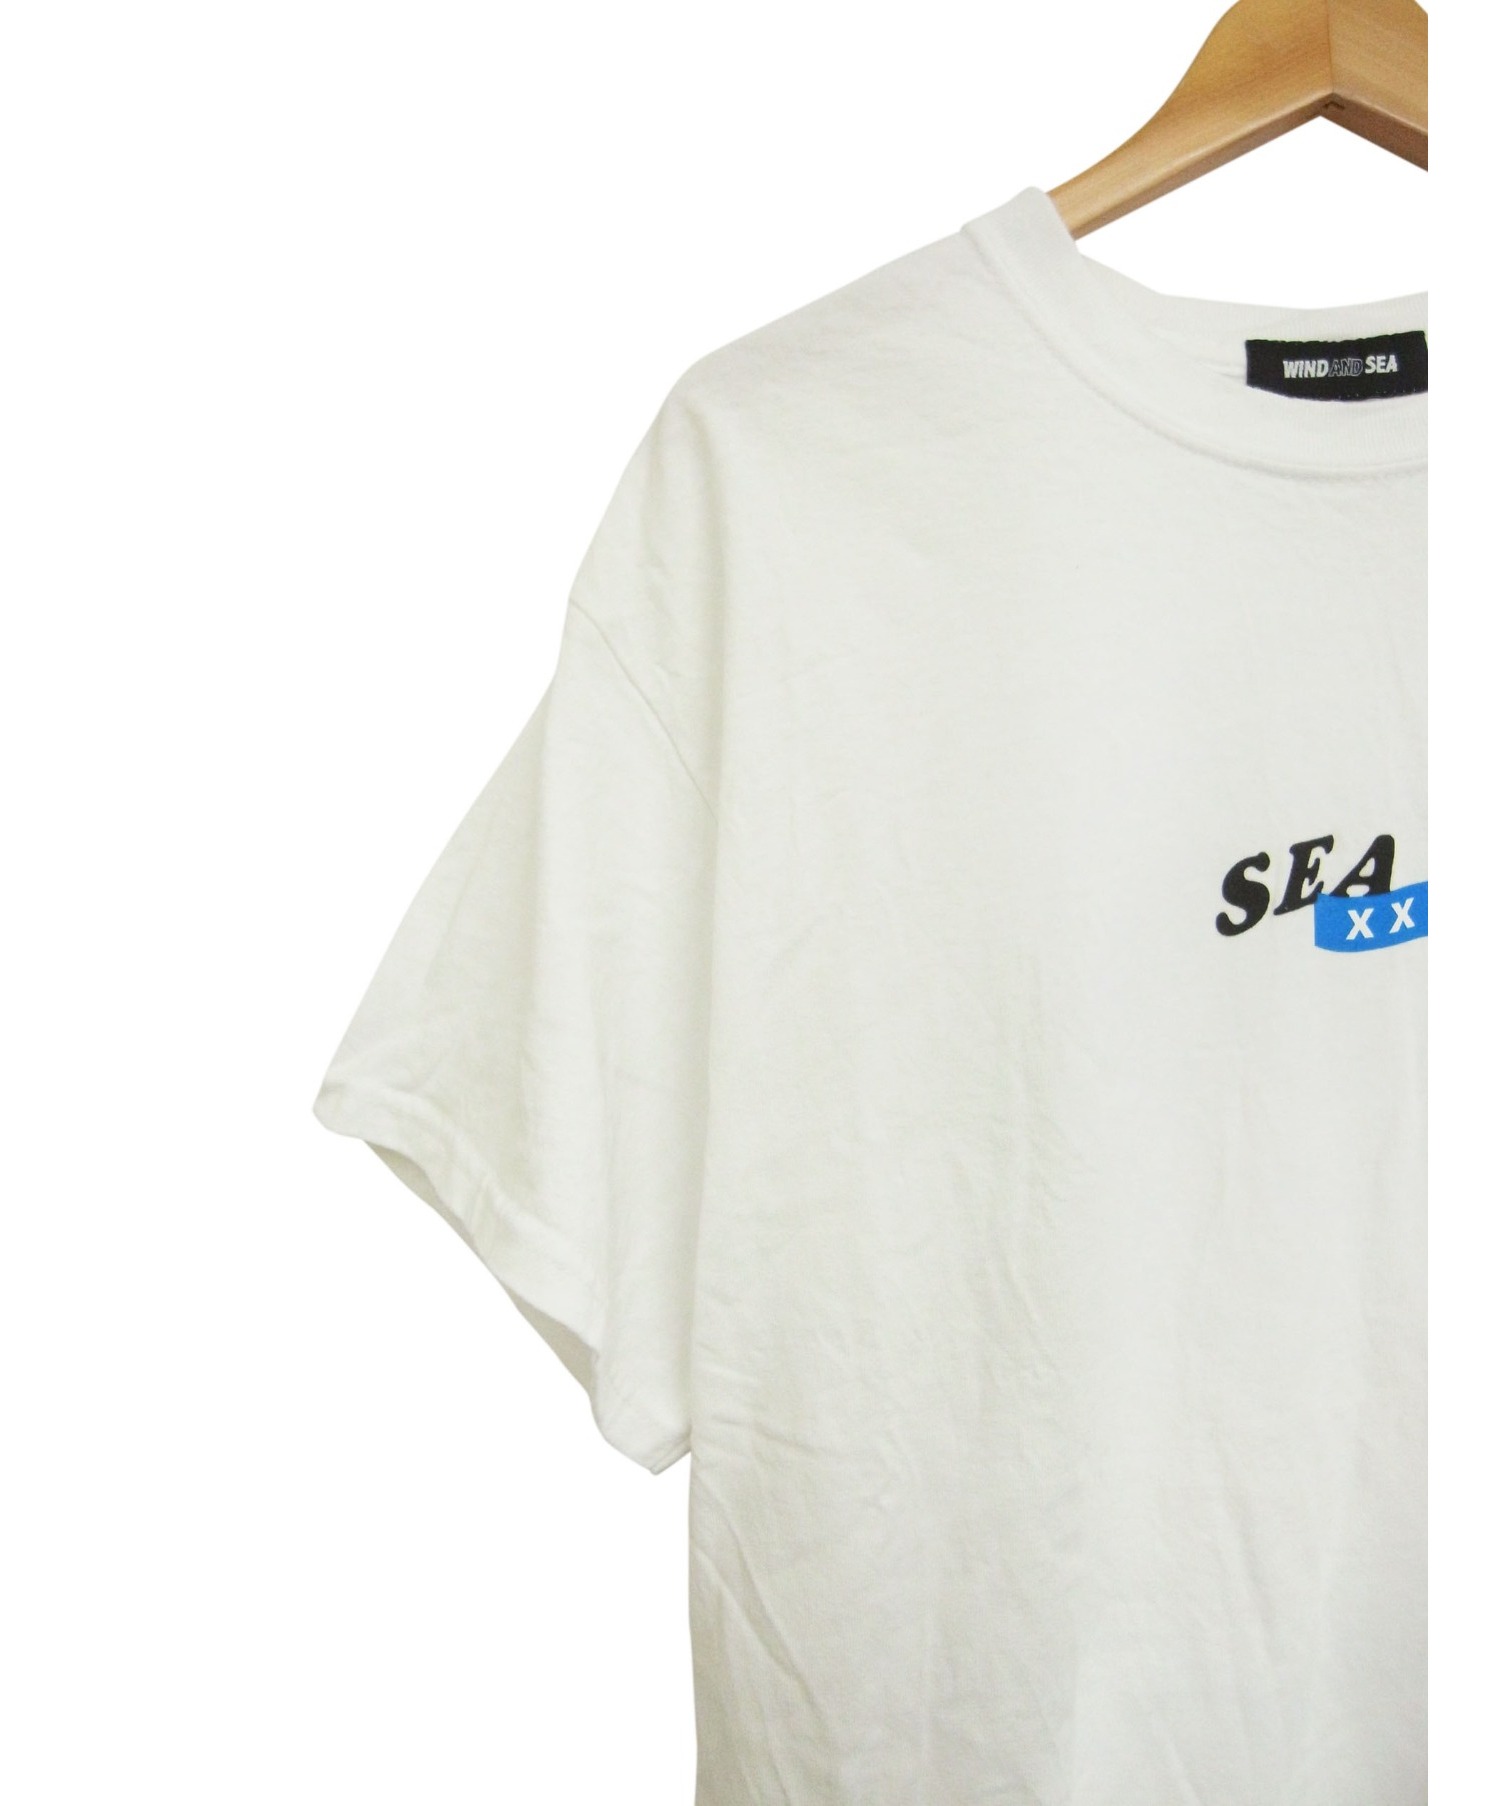 WIND AND SEA×GOD SELECTION XXX (ウィンダンシー×ゴッドセレクショントリプルエックス) サークルロゴプリントTシャツ  ホワイト サイズ:L 2020SSモデル